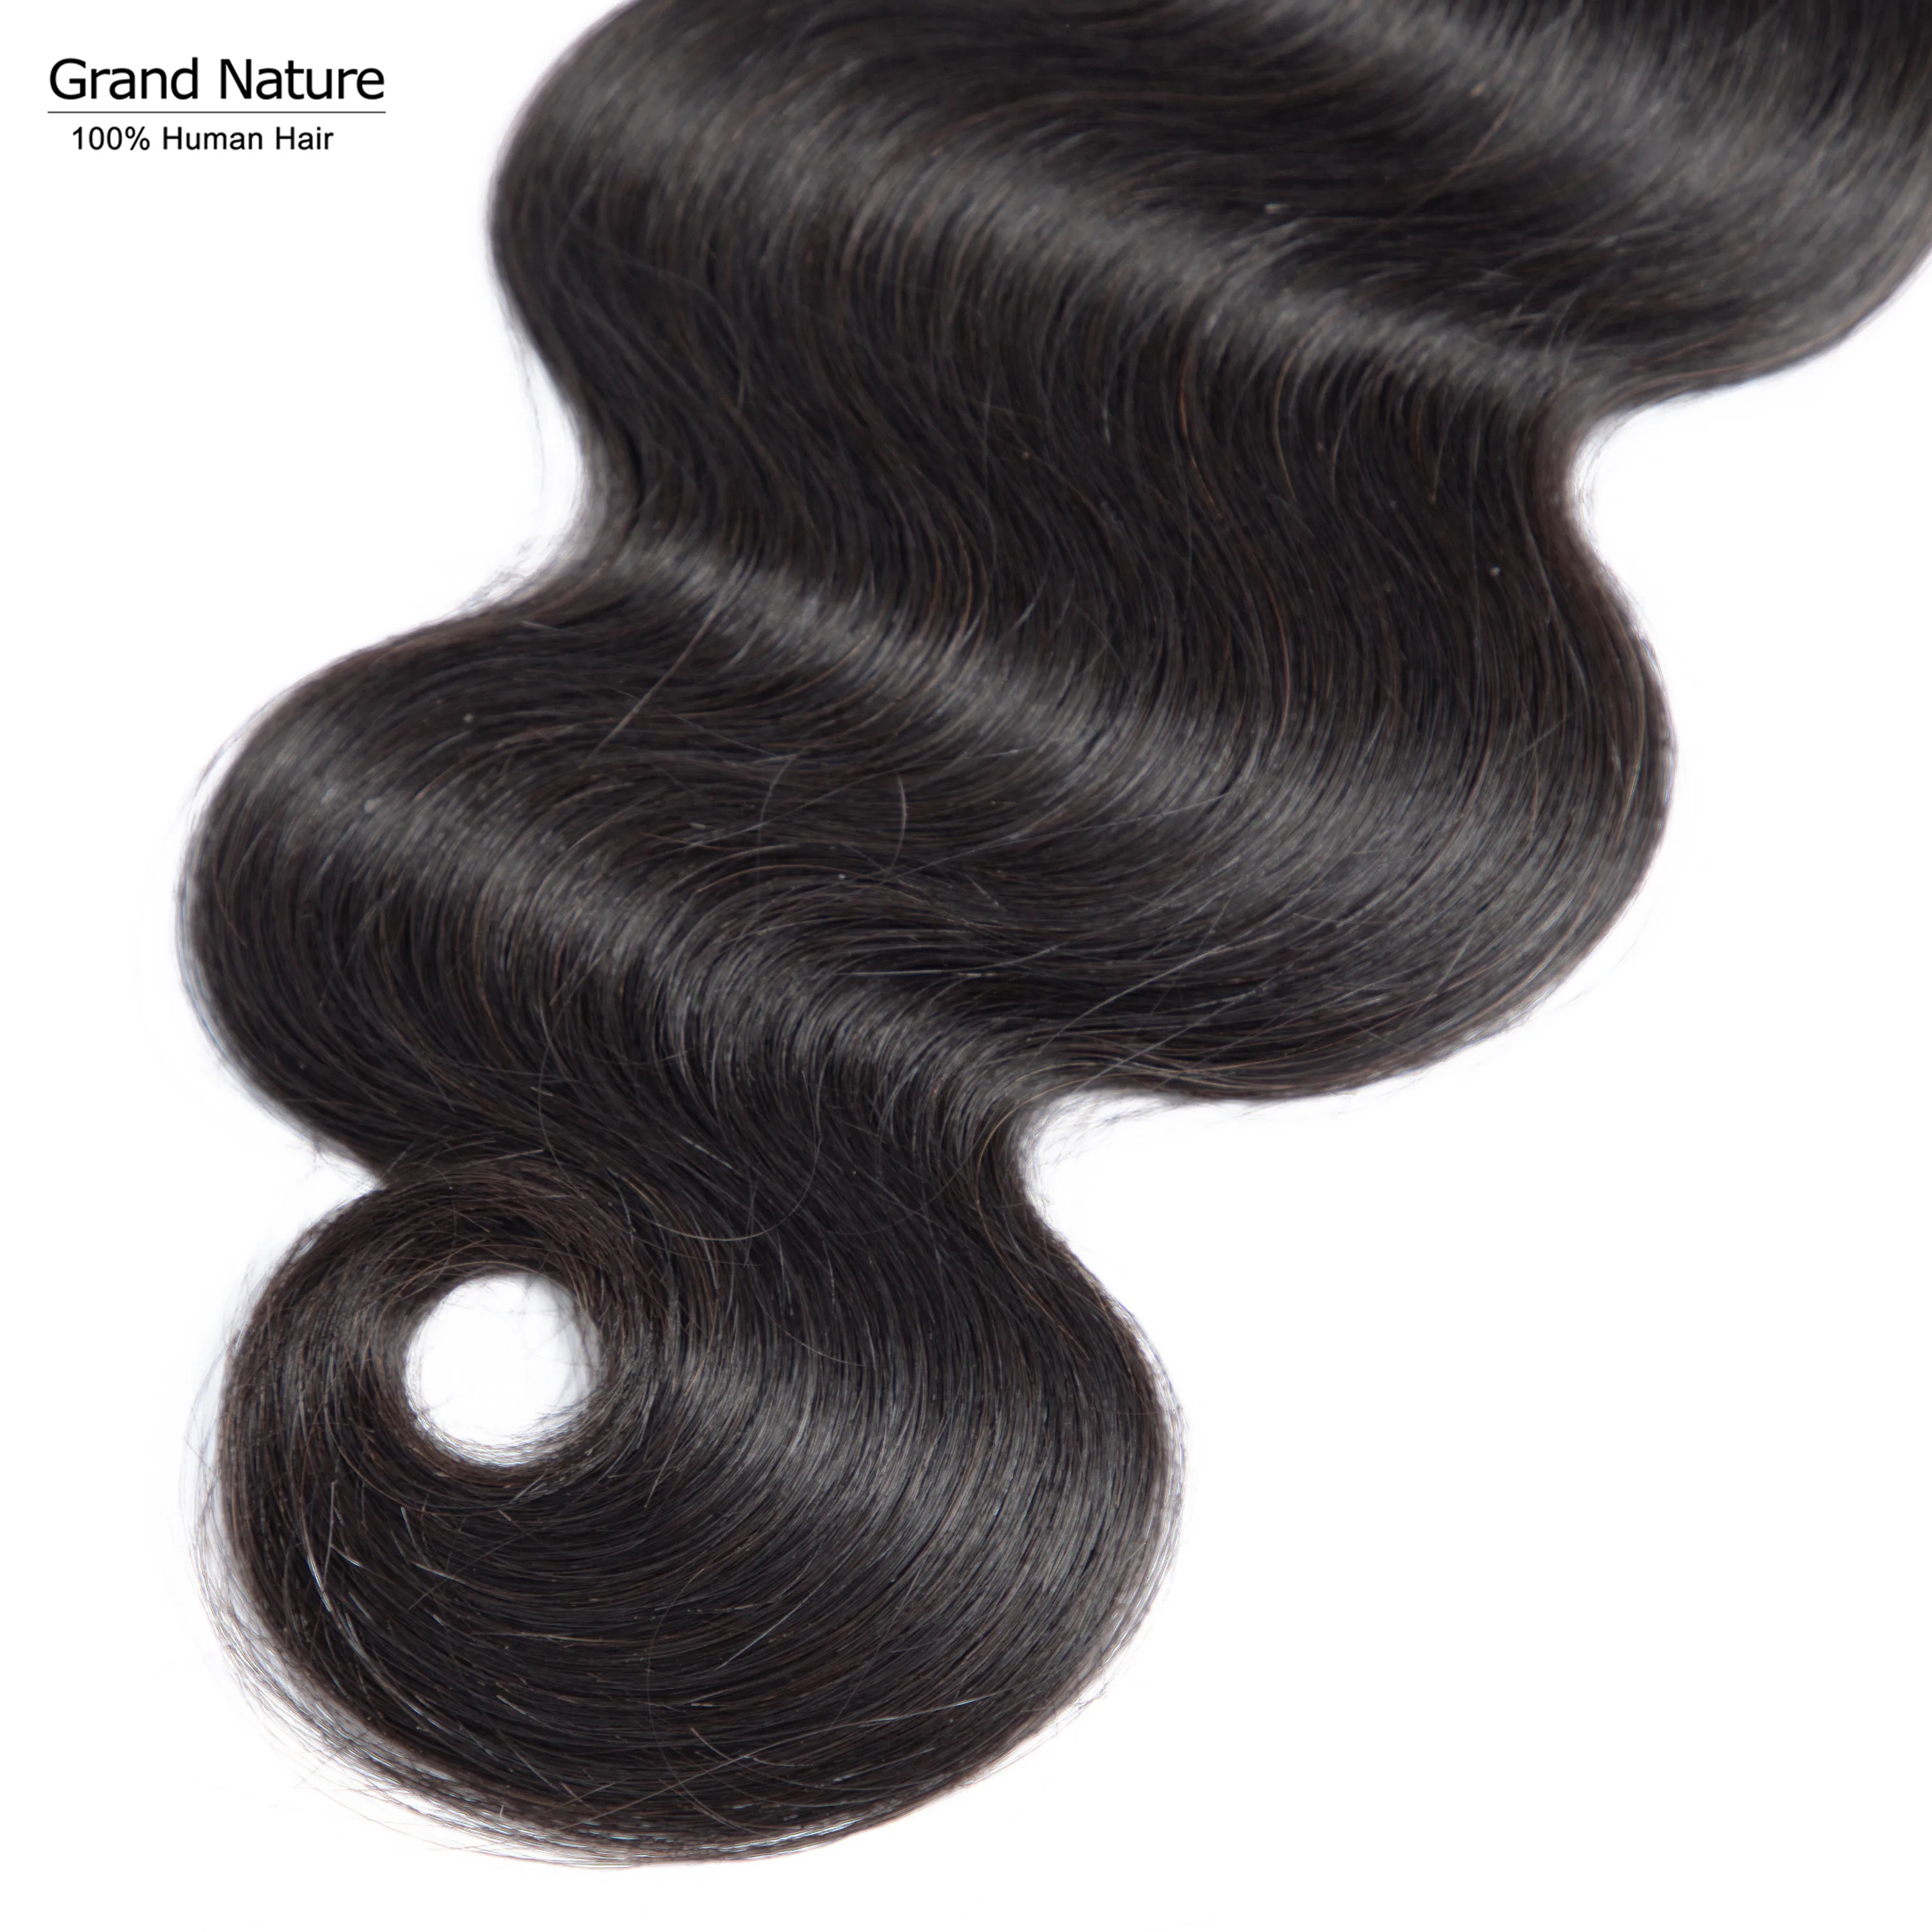 Малазийские пучки волнистых волос 3/4 шт Remy человеческие волосы переплетения наращивание натурального цвета 8-26 дюймов могут быть окрашены